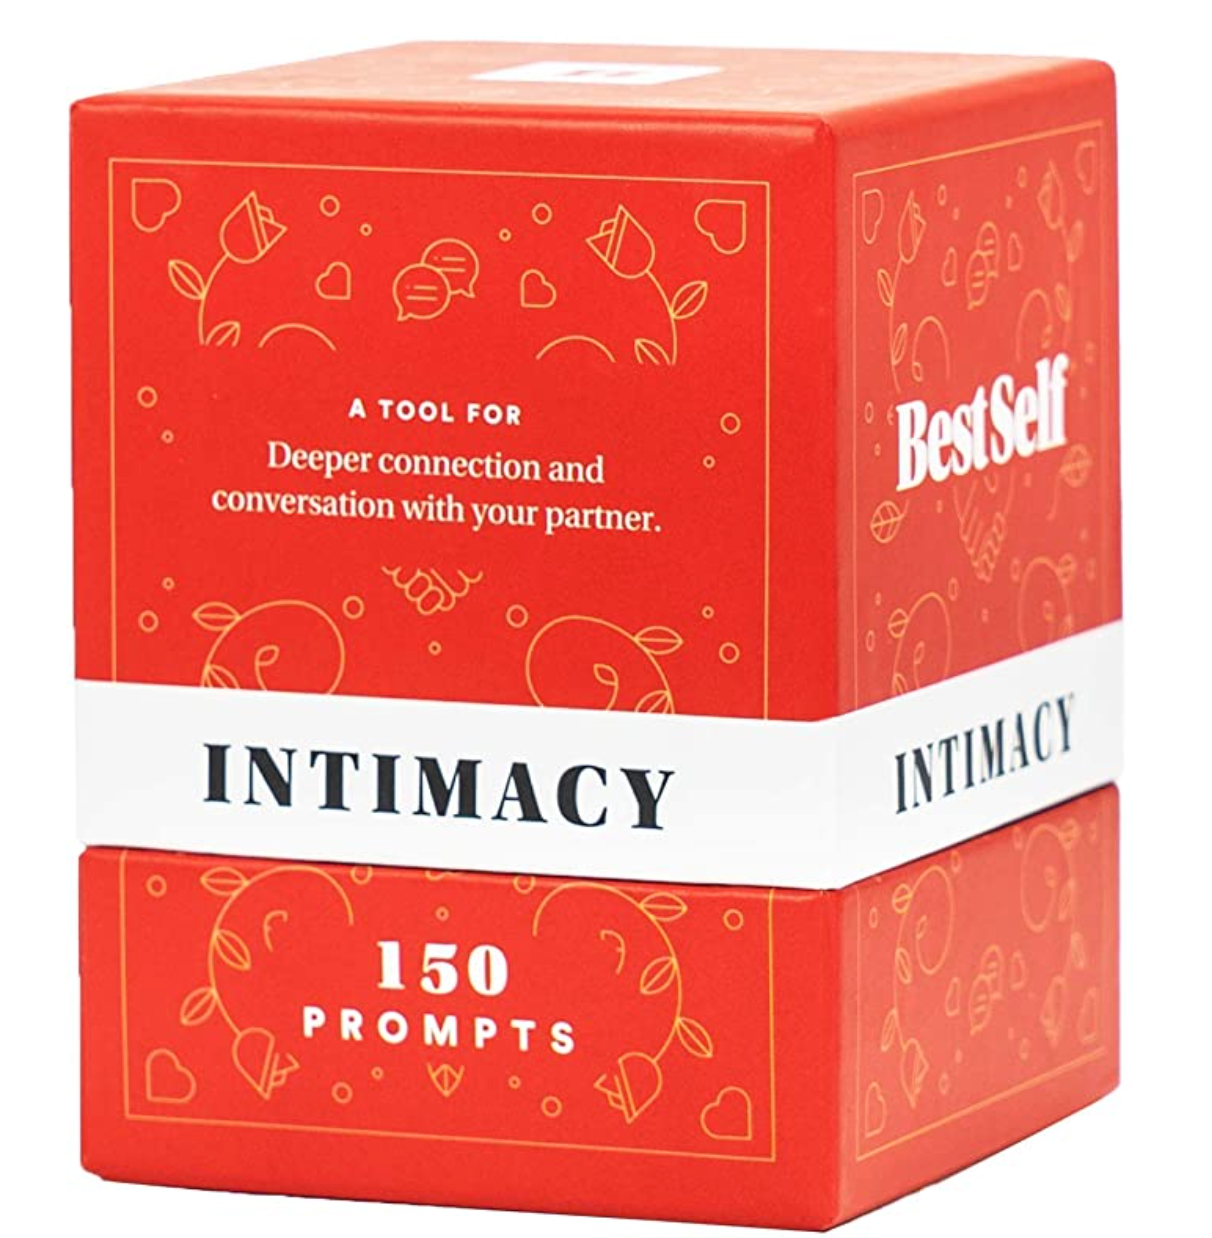 The Intimacy Deck&nbsp;via Amazon